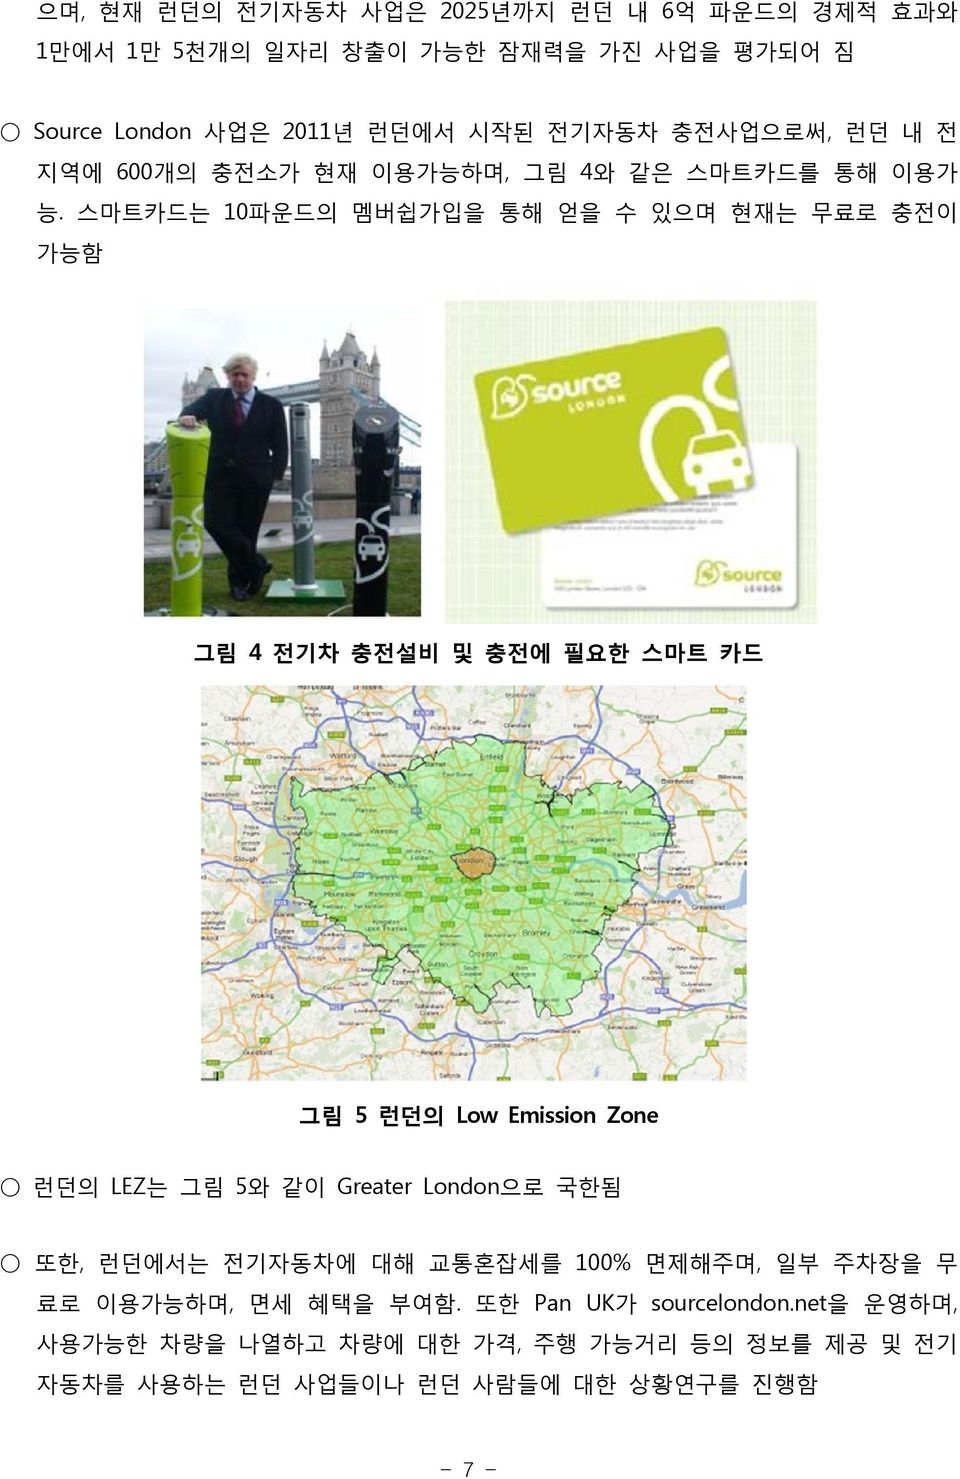 스마트카드는 10파운드의 멤버쉽가입을 통해 얻을 수 있으며 현재는 무료로 충전이 가능함 그림 4 전기차 충전설비 및 충전에 필요한 스마트 카드 그림 5 런던의 Low Emission Zone 런던의 LEZ는 그림 5와 같이 Greater